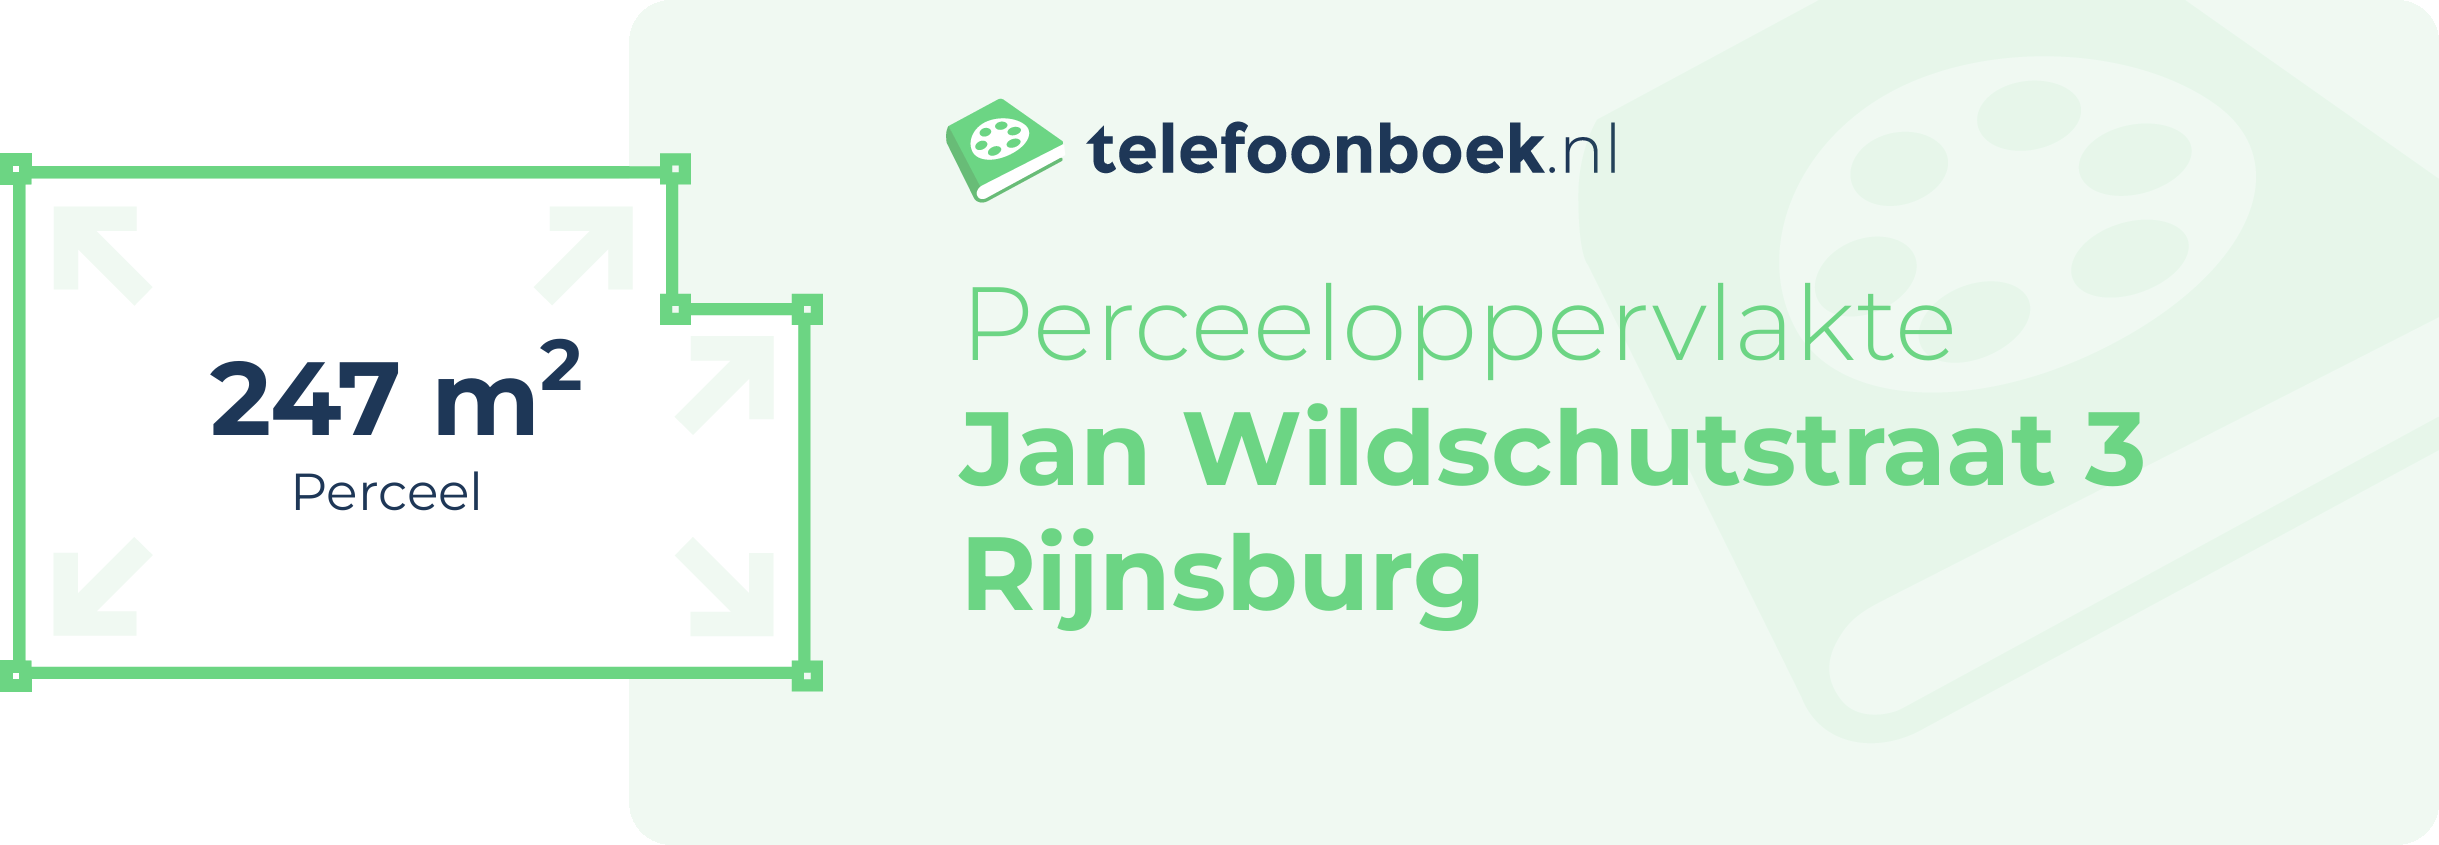 Perceeloppervlakte Jan Wildschutstraat 3 Rijnsburg